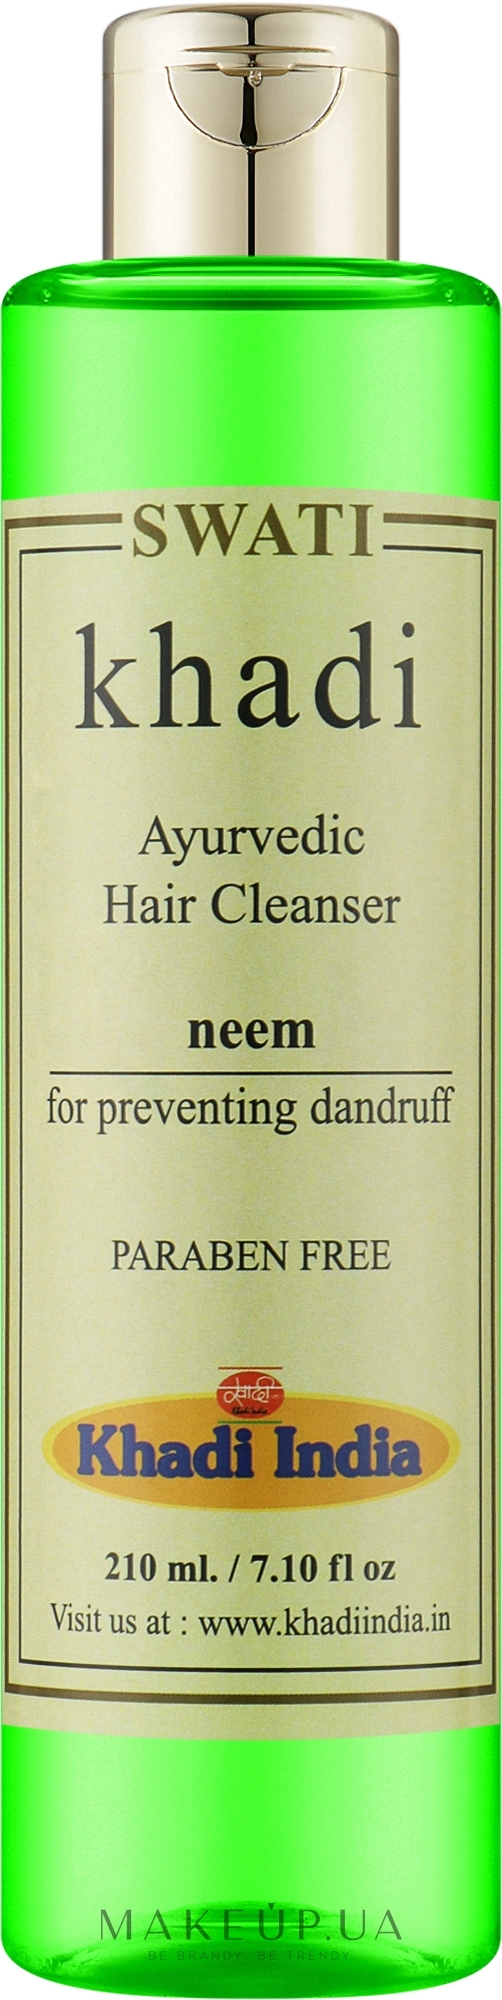 Аюрведичний очищувальний засіб від лупи "Нім" - Khadi Swati Ayurvedic Hair Cleanser Neem — фото 210ml